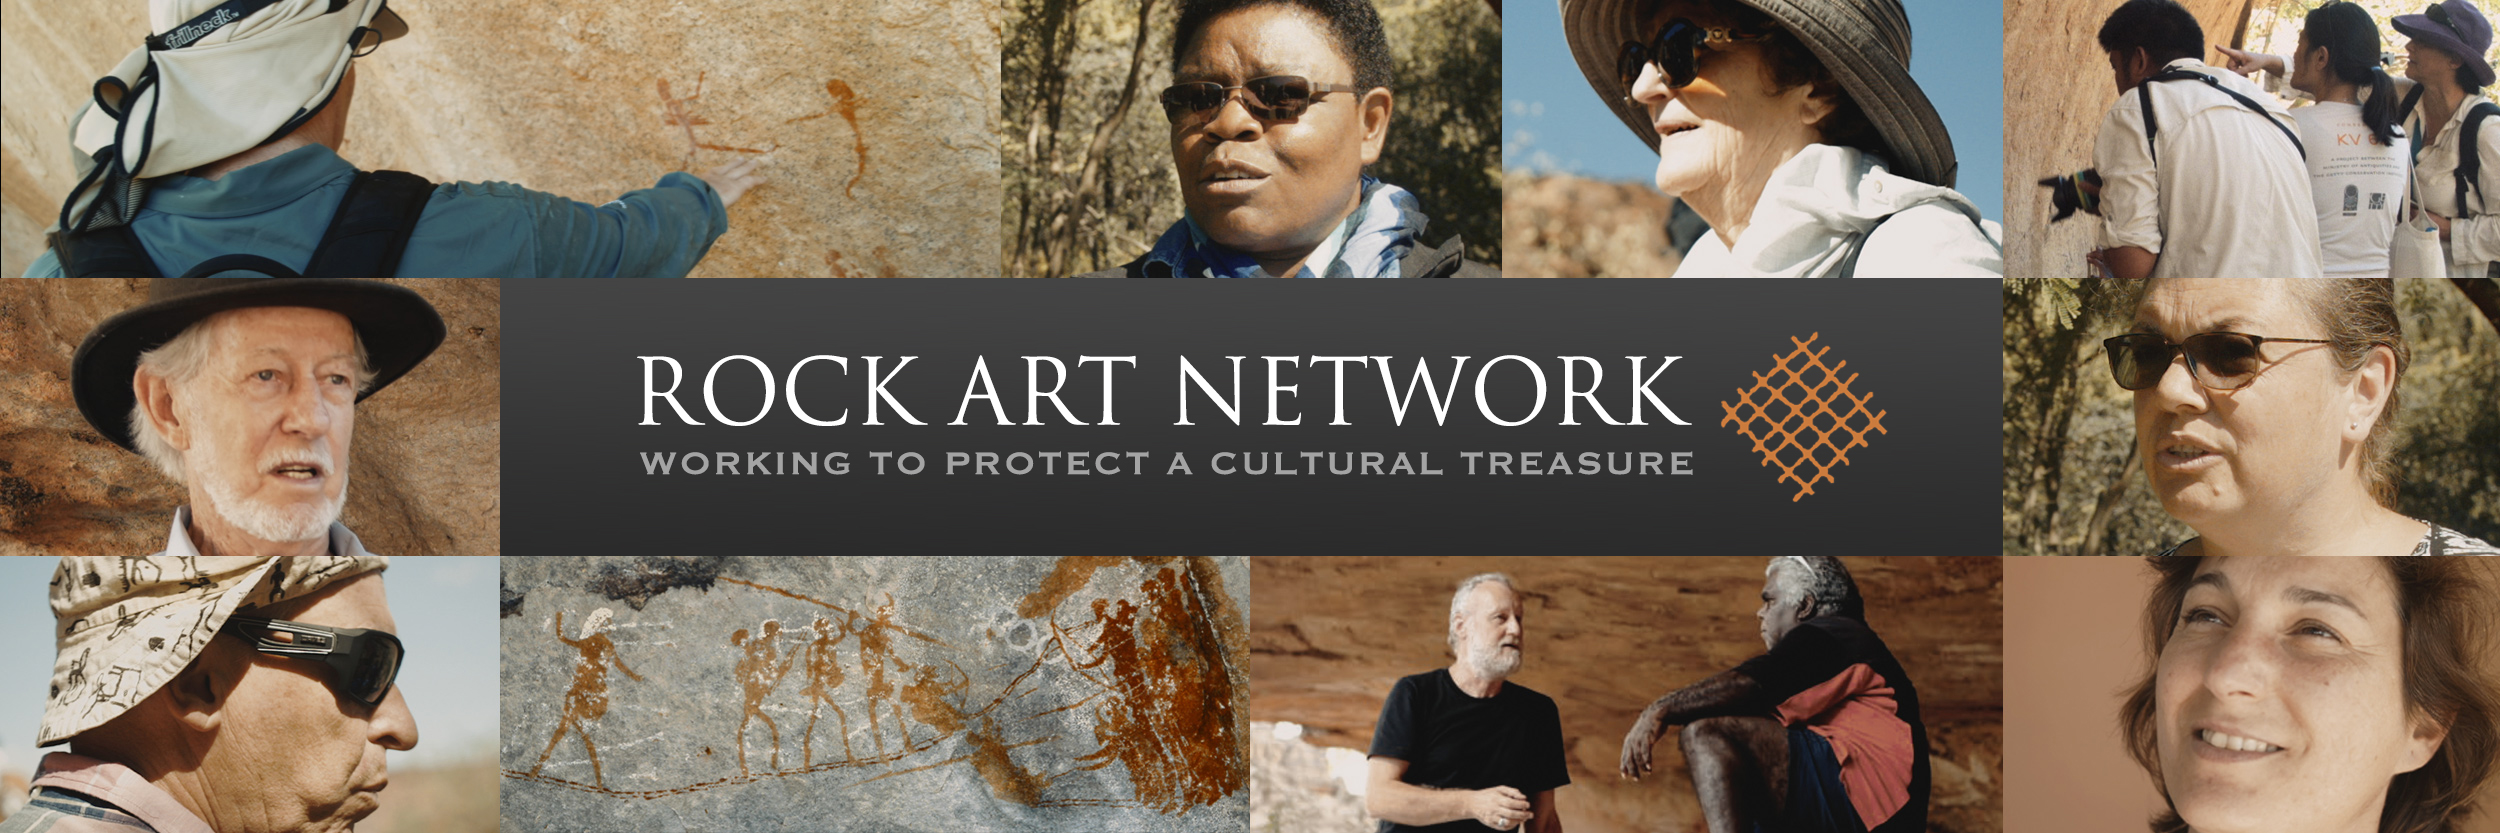 Bradshaw Foundation Rock Art Network Getty Conservation Institute